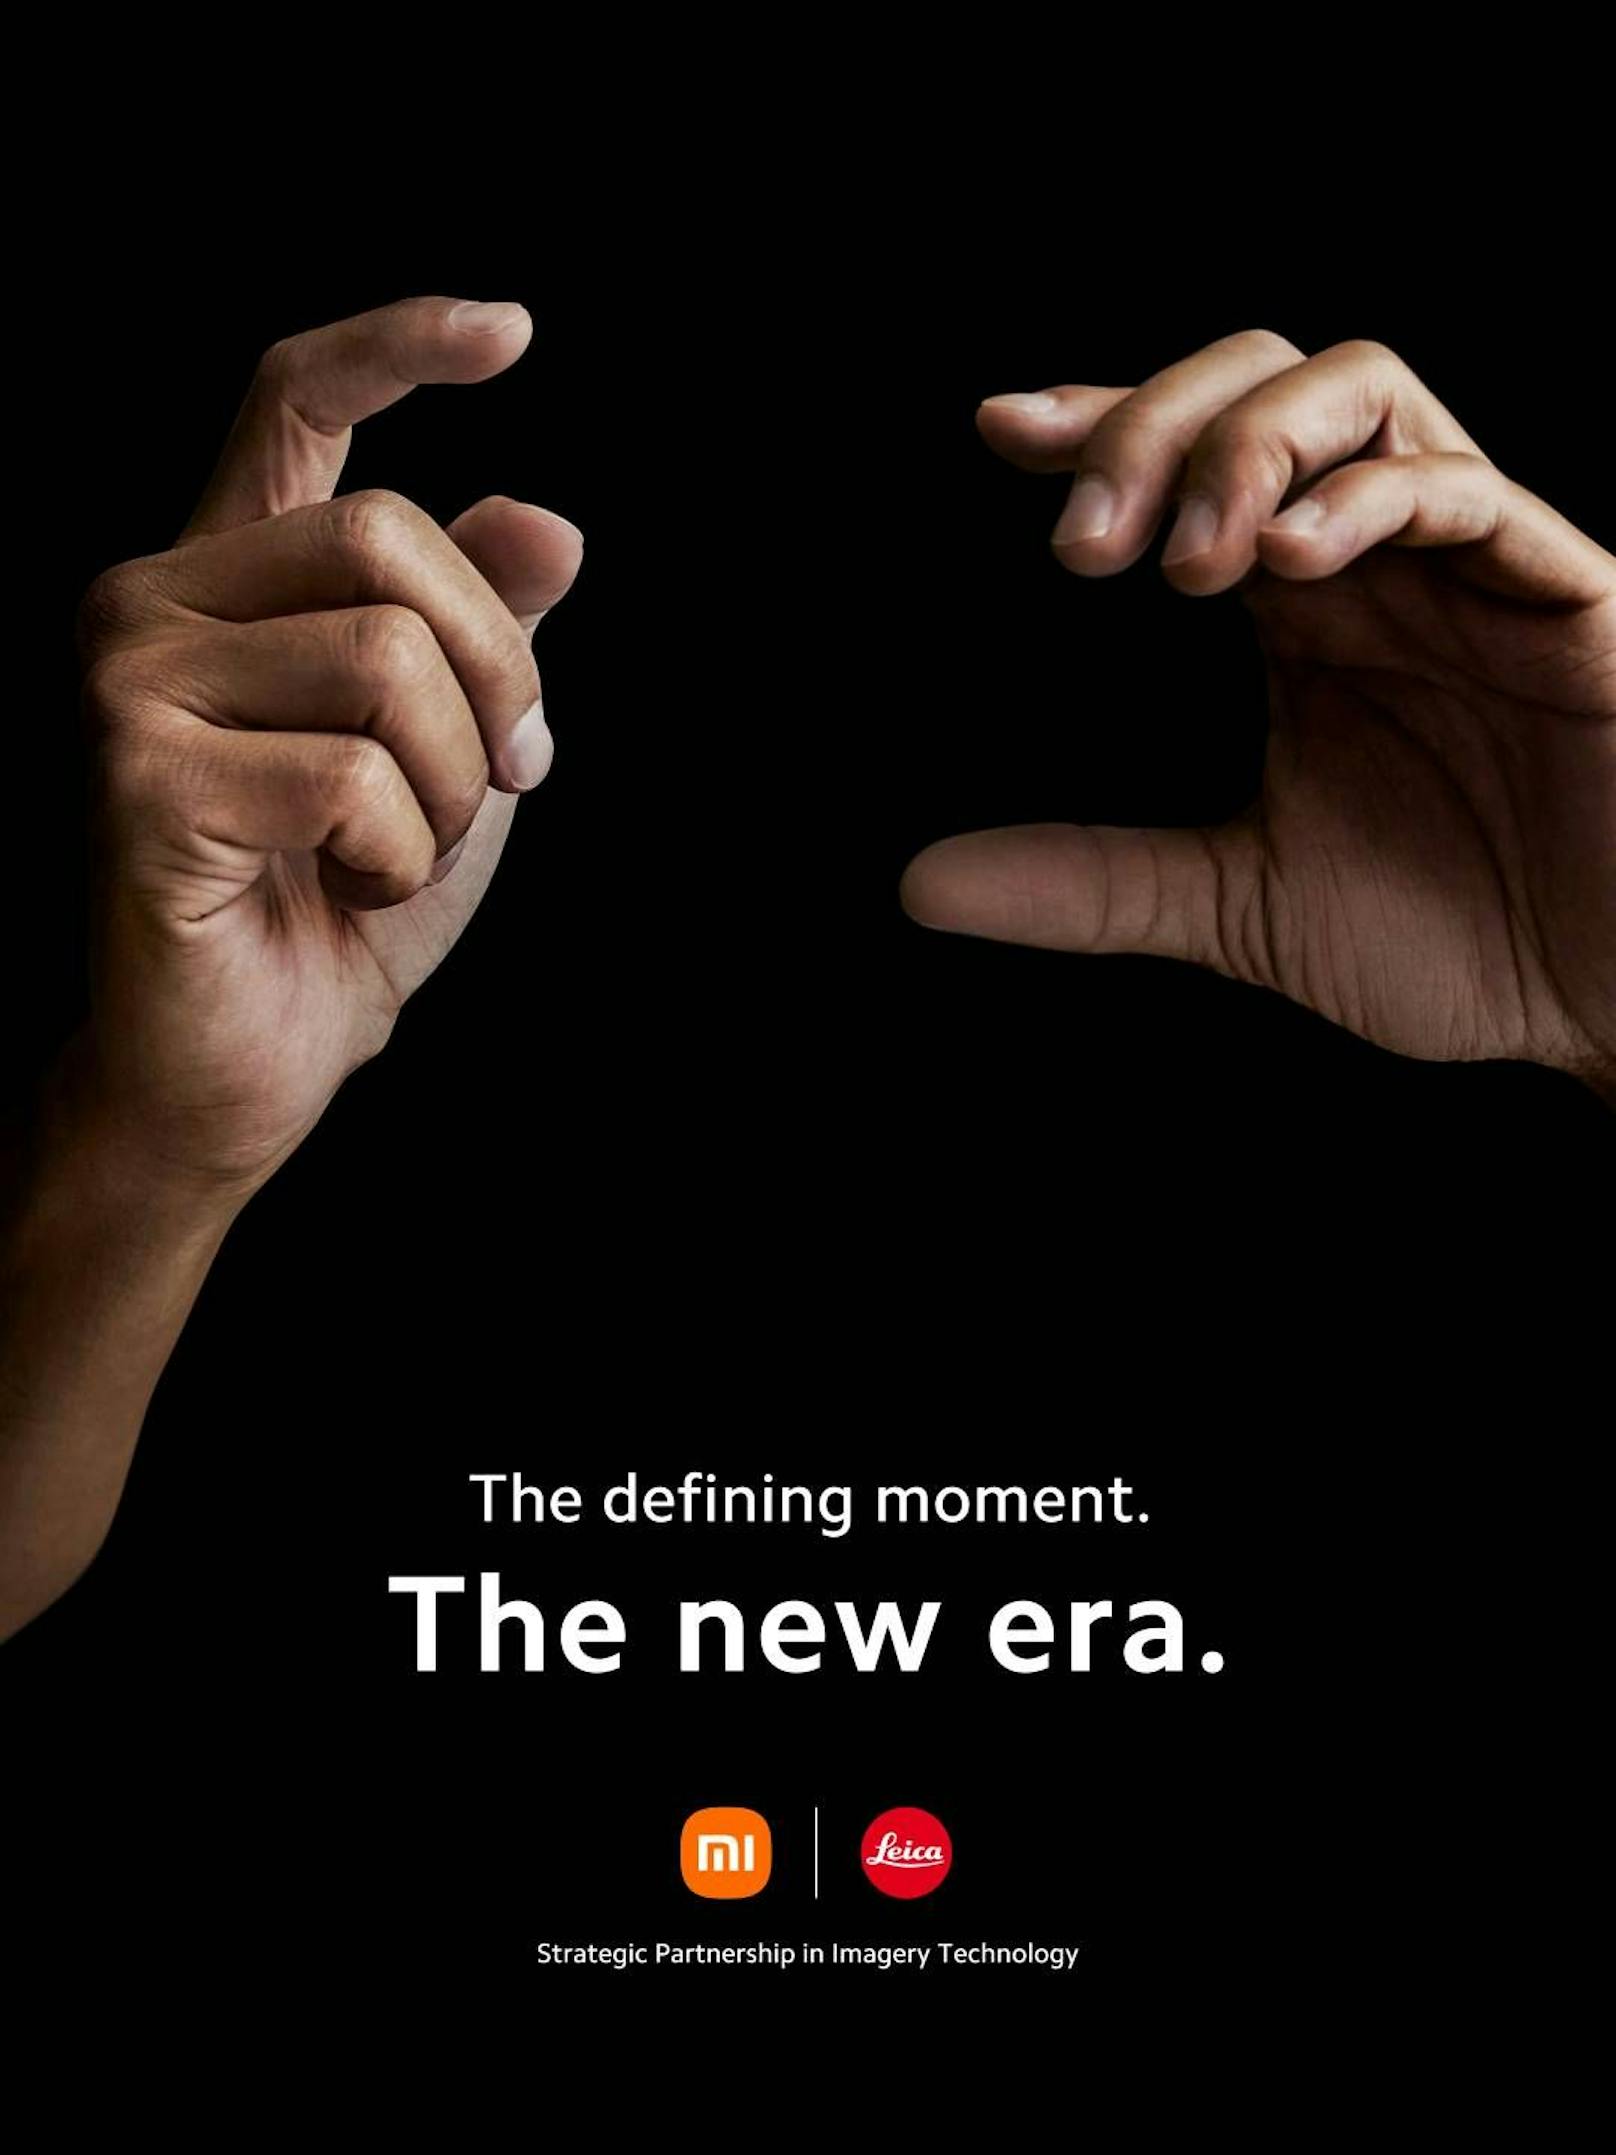 So verkünden Xiaomi und Leica ihre neue Partnerschaft.